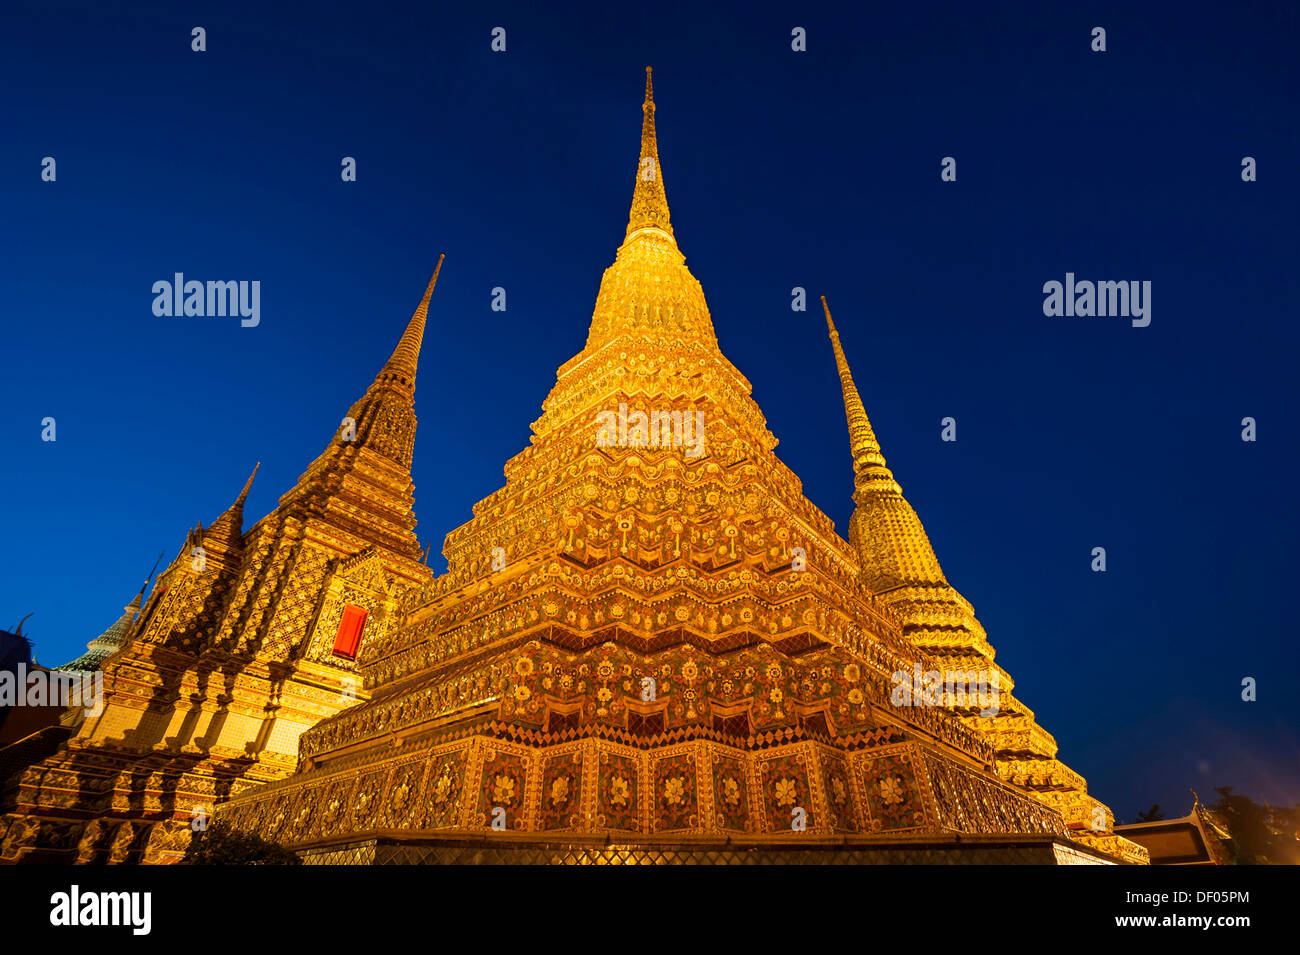 Large Chedis of the Phra Maha Chedi Si Ratchakan group, Wat Pho or Wat Phra Chetuphon, at dusk, Bangkok, Thailand, Asia Stock Photo